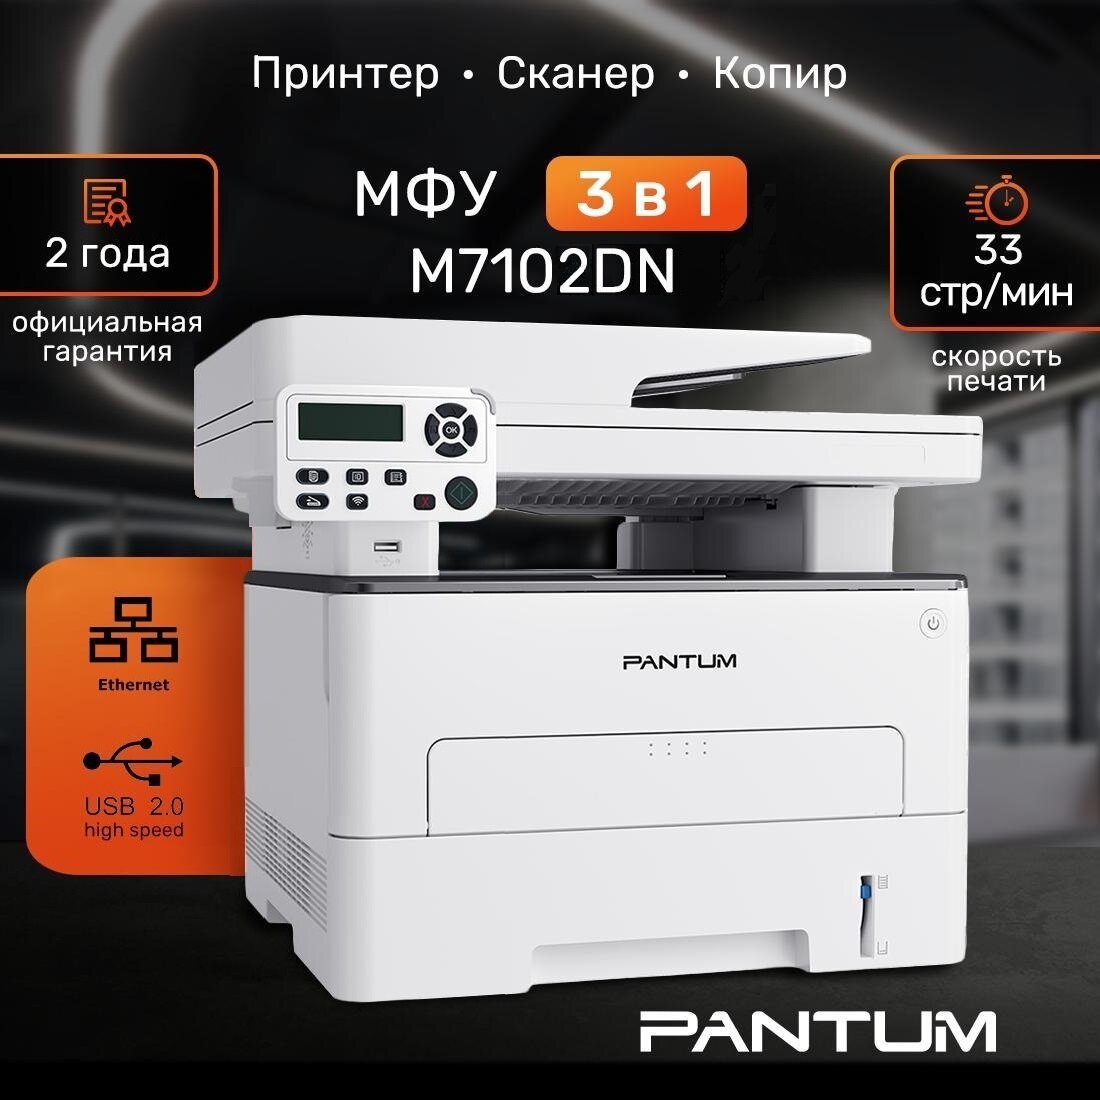 МФУ лазерный Pantum M7102DN, Двусторонняя печать, LAN, USB